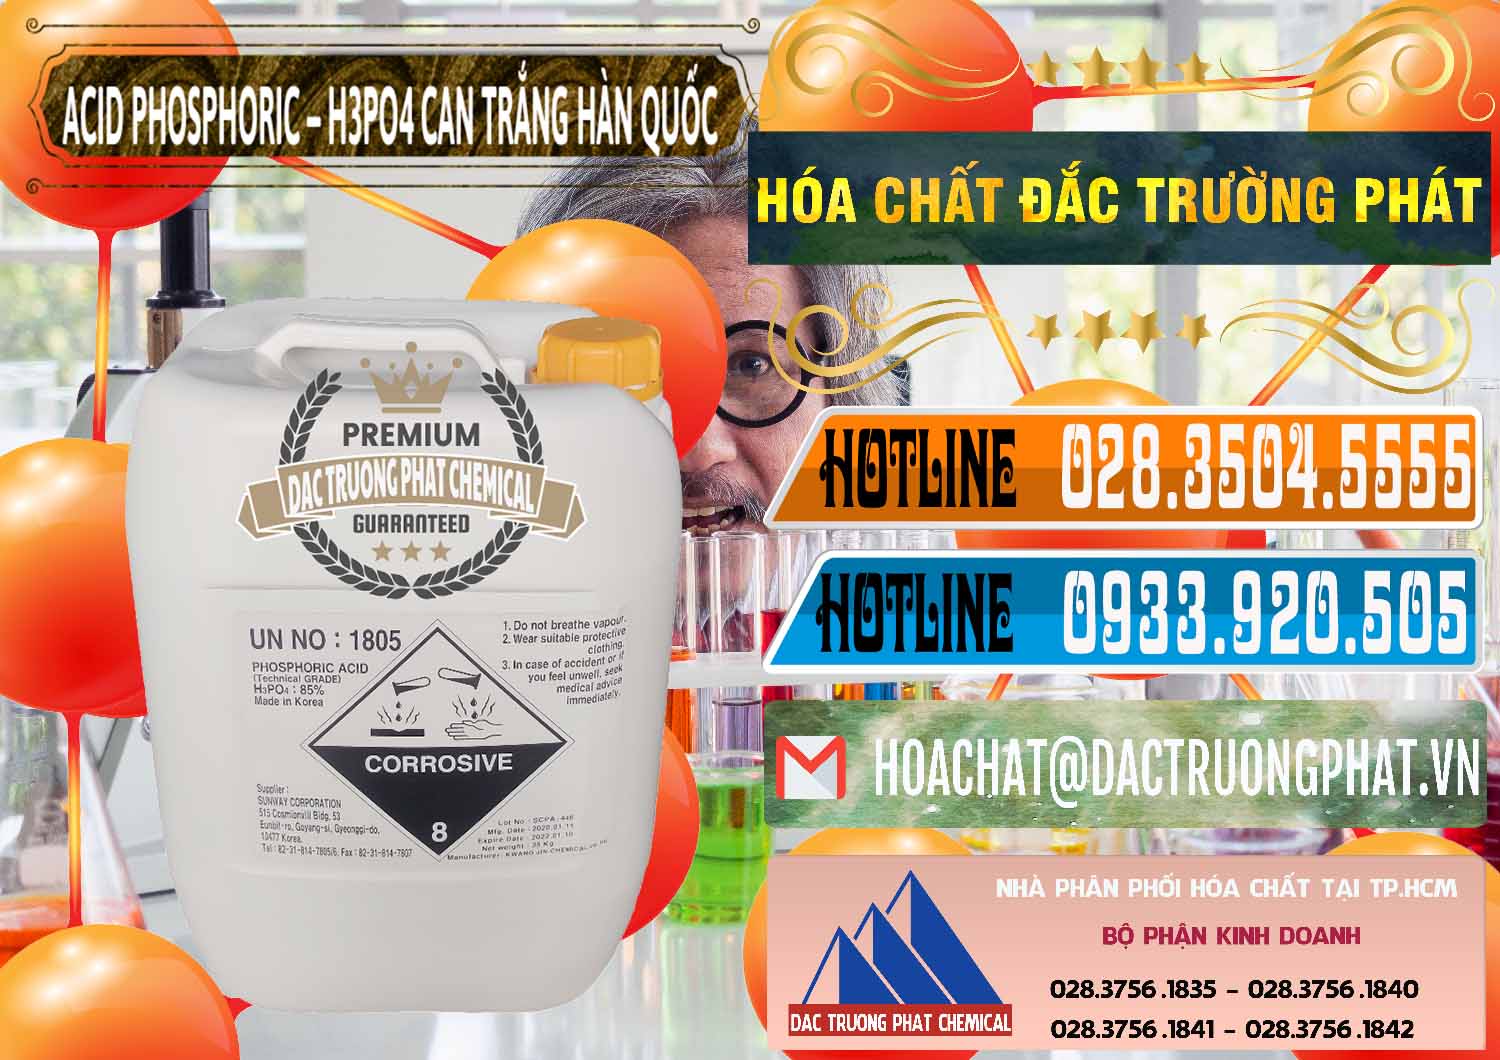 Cty chuyên bán ( cung cấp ) Acid Phosphoric - Axit Phosphoric H3PO4 Can Trắng Hàn Quốc Korea - 0017 - Nơi chuyên bán ( cung cấp ) hóa chất tại TP.HCM - stmp.net